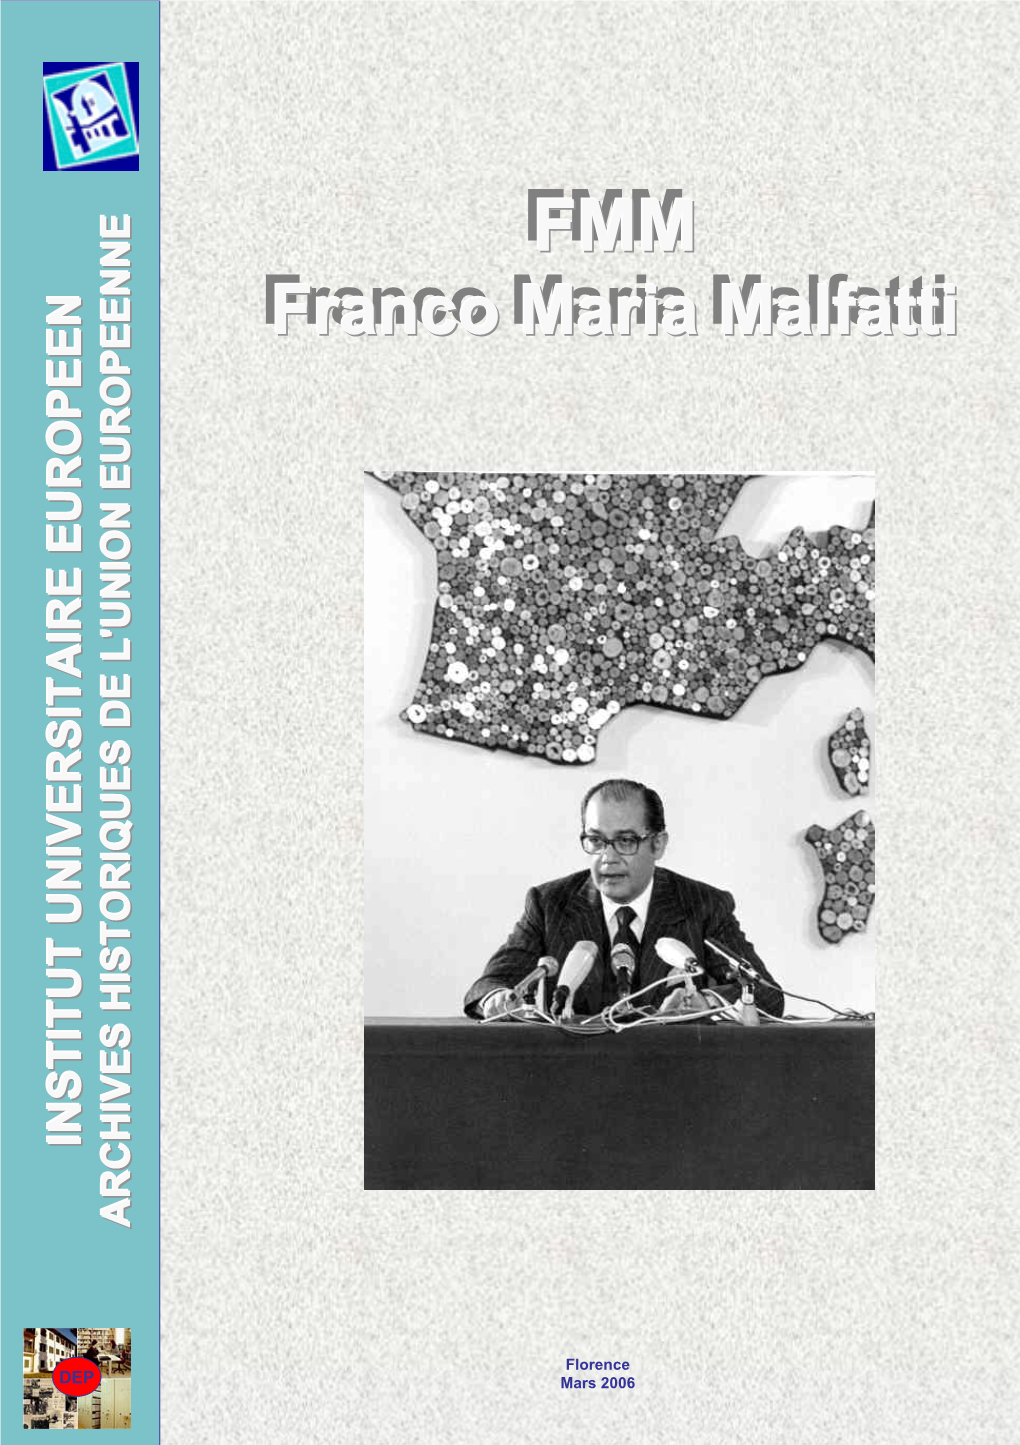 Franco Maria Malfatti